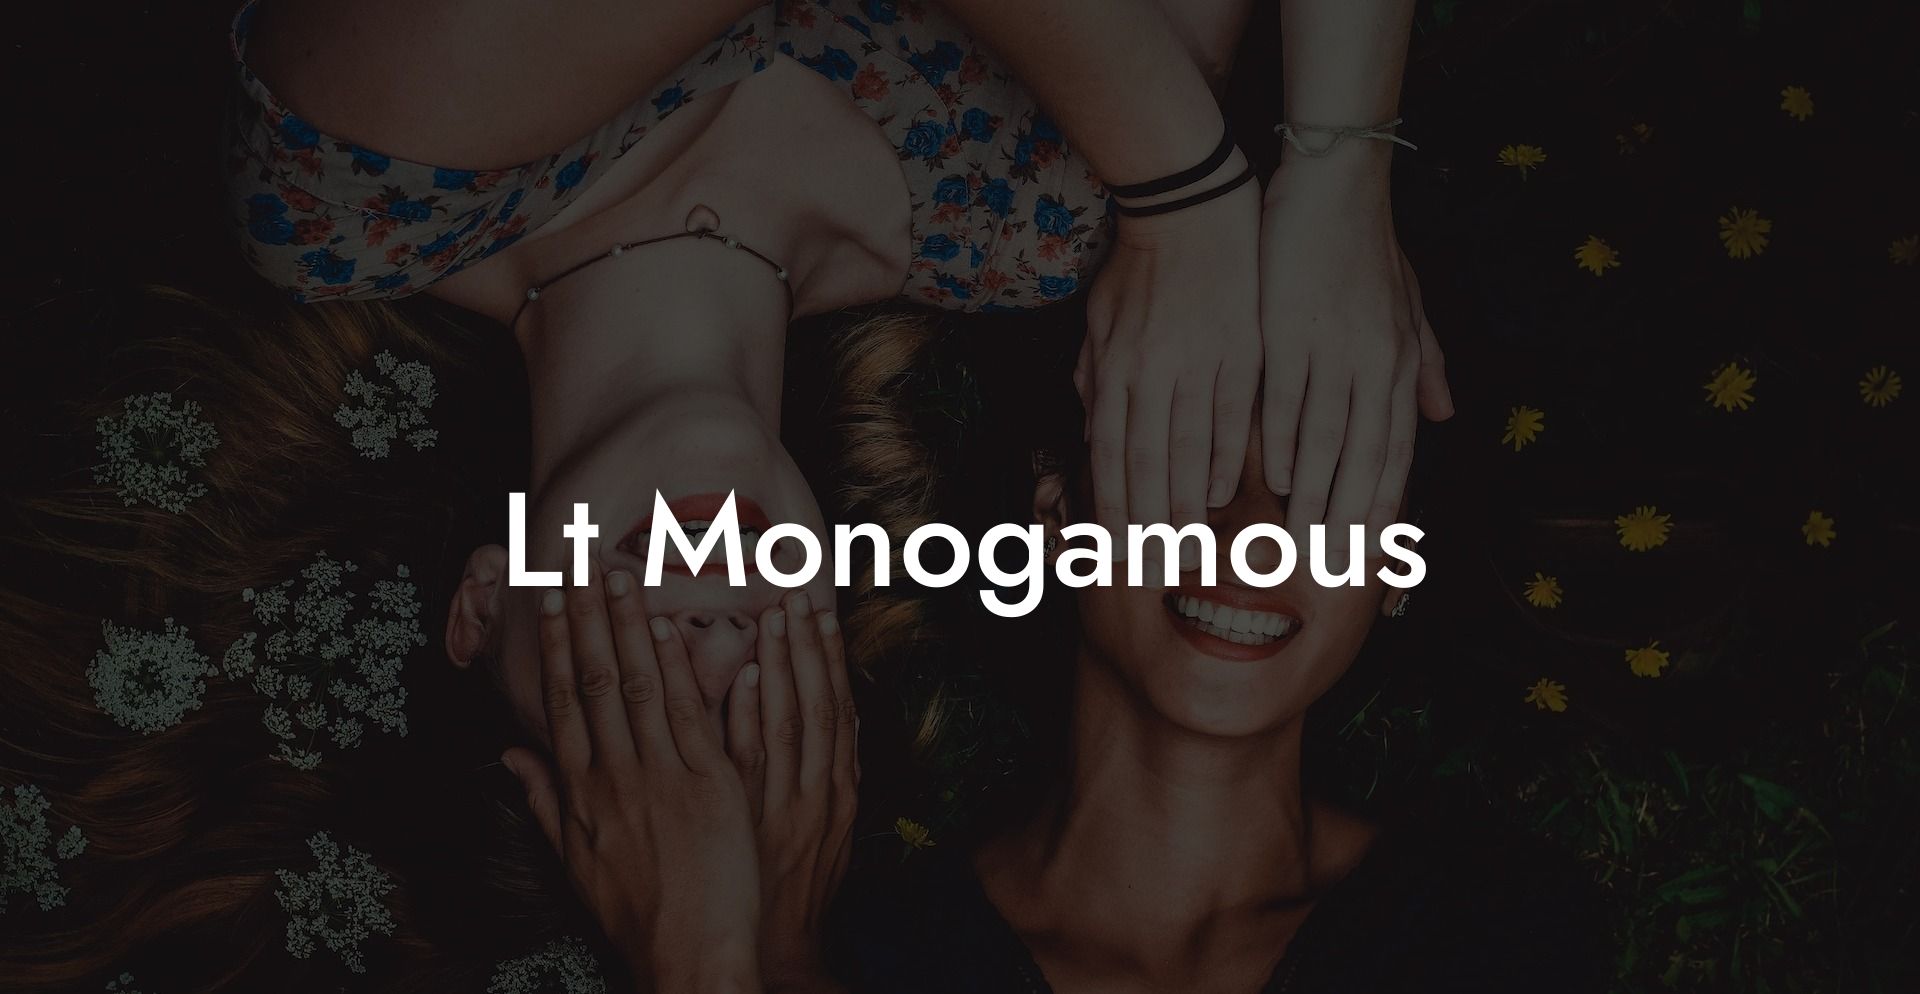 Lt Monogamous